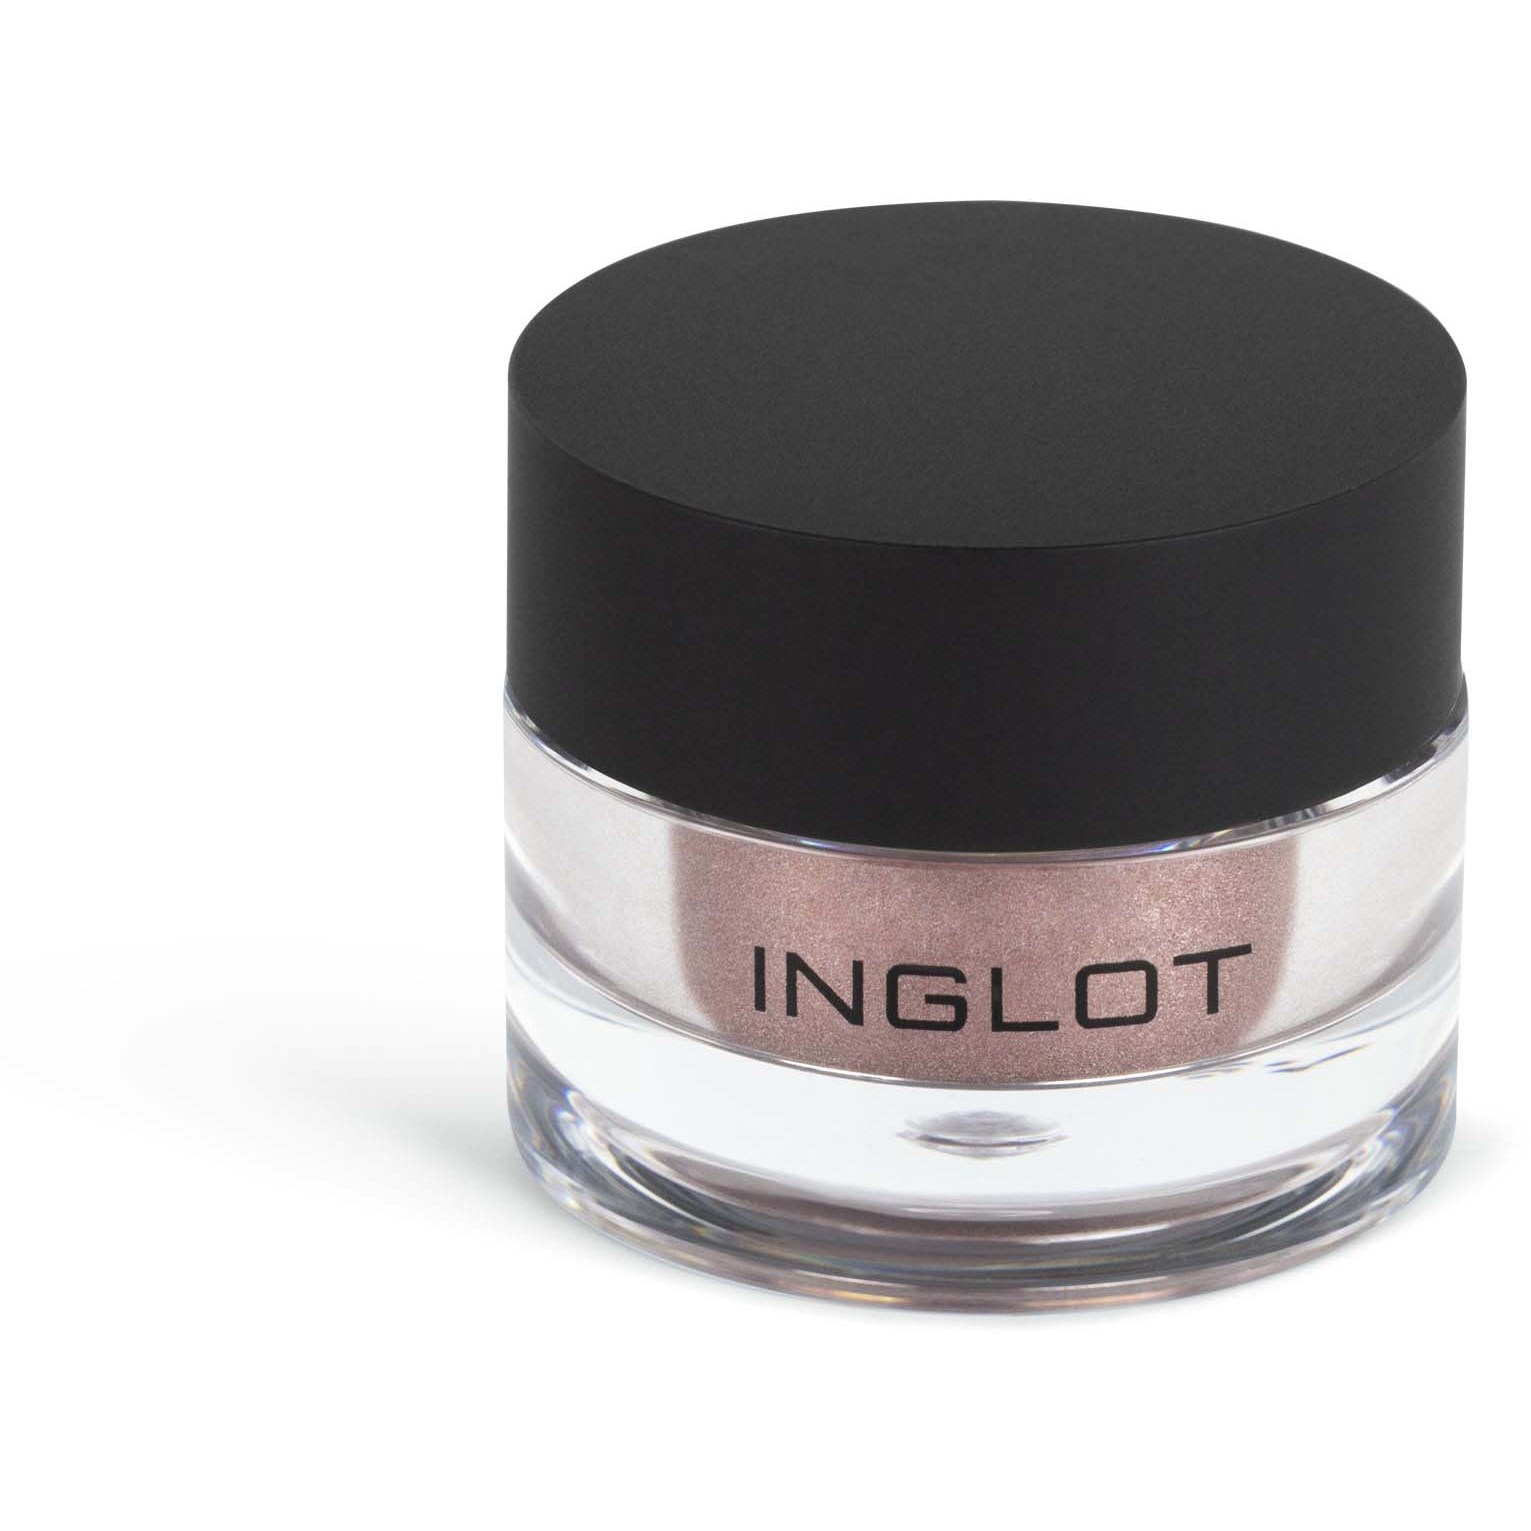 Inglot Eye & Body Powder Pigment 402